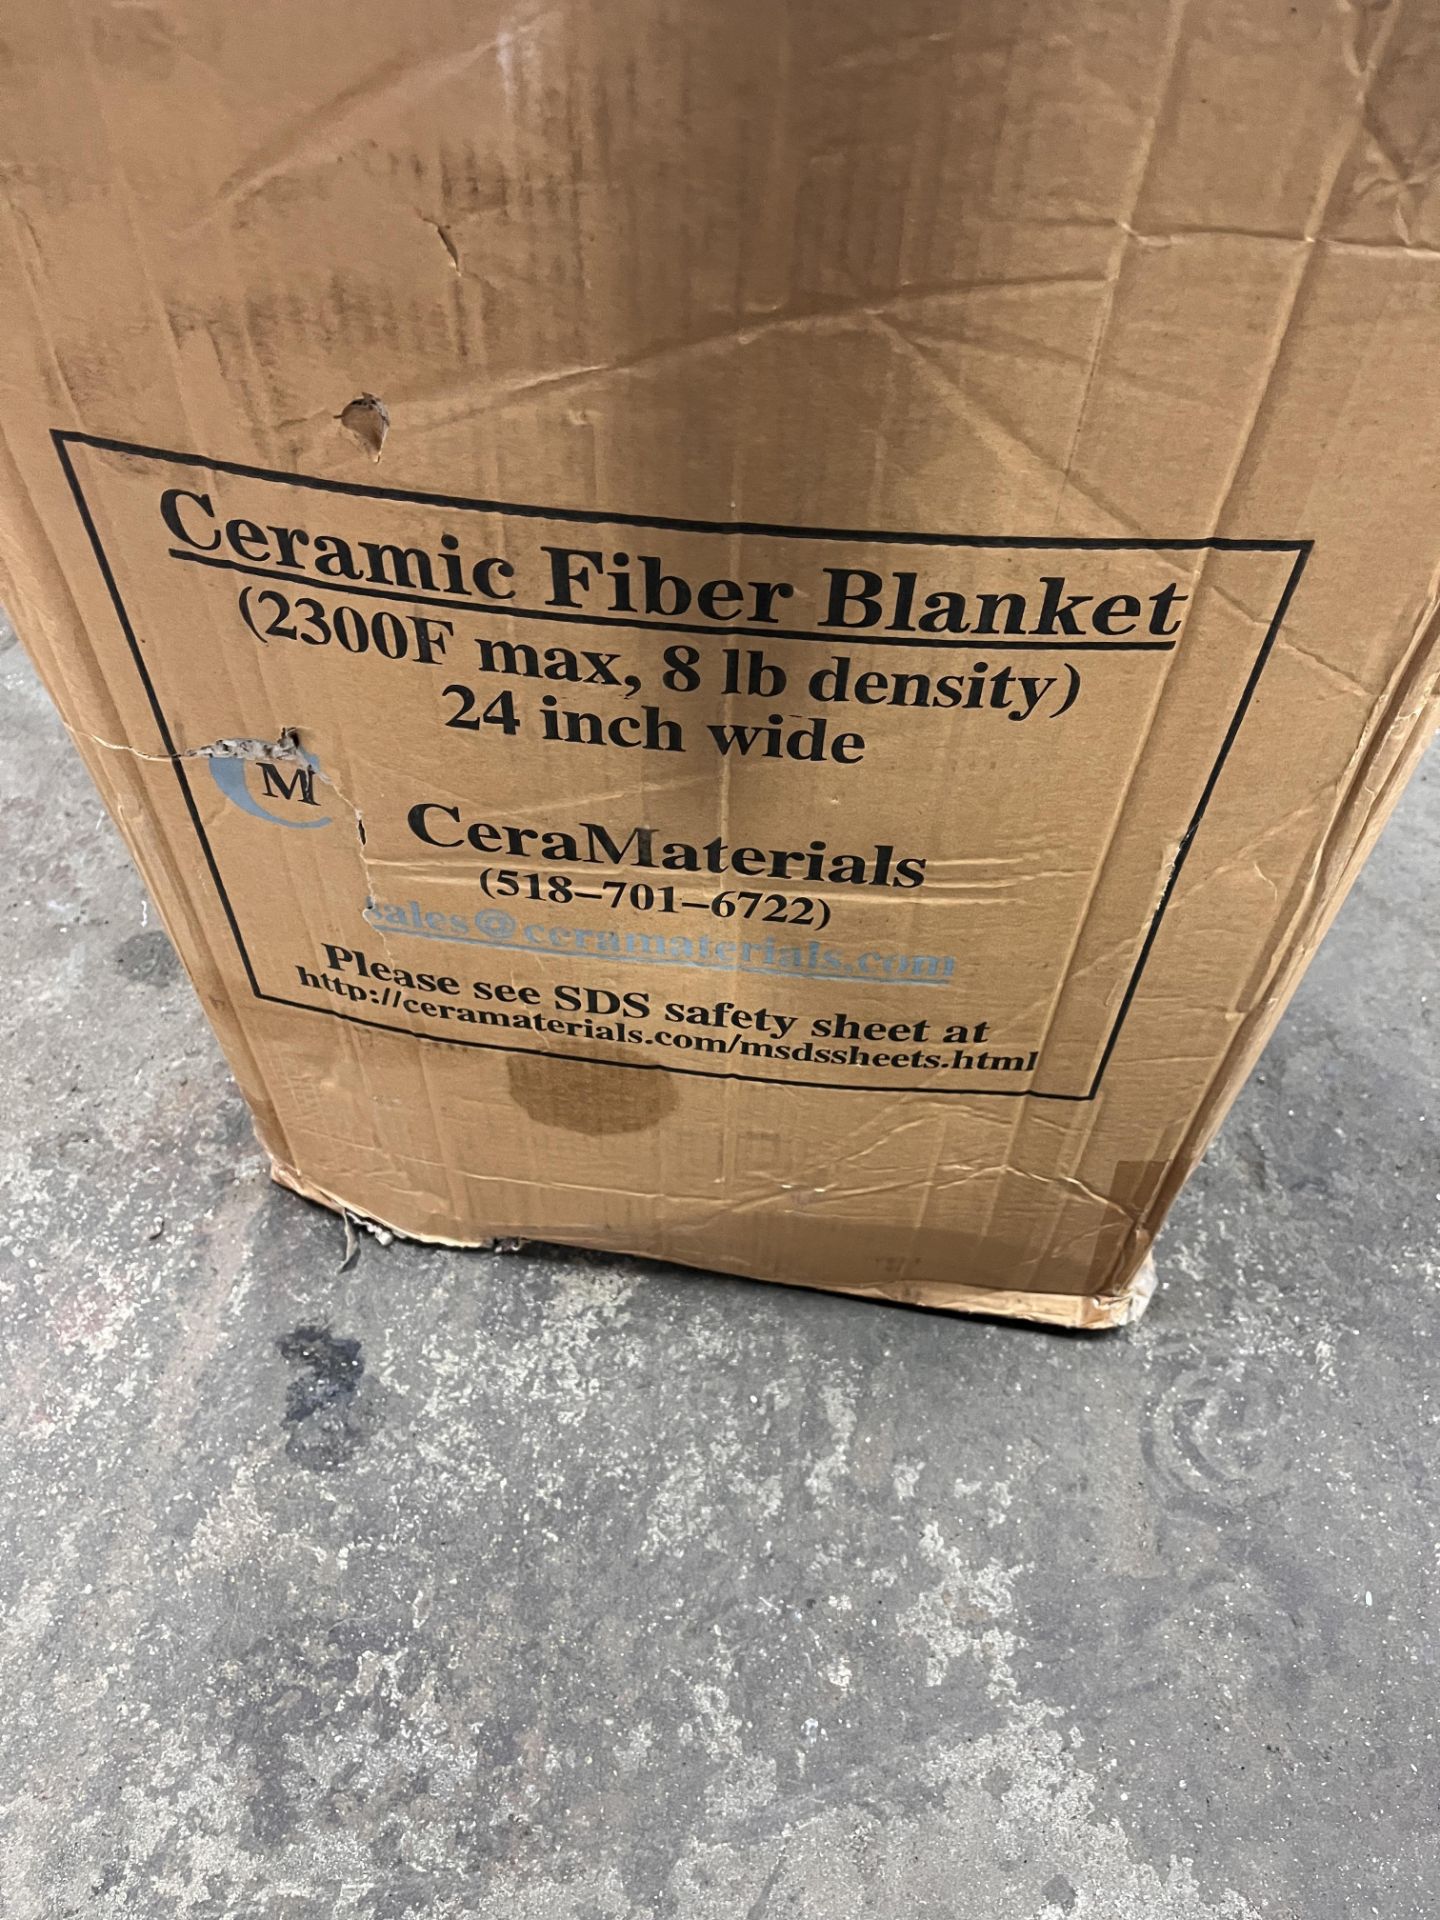 Ceramic Fiber Blanket - Image 2 of 4